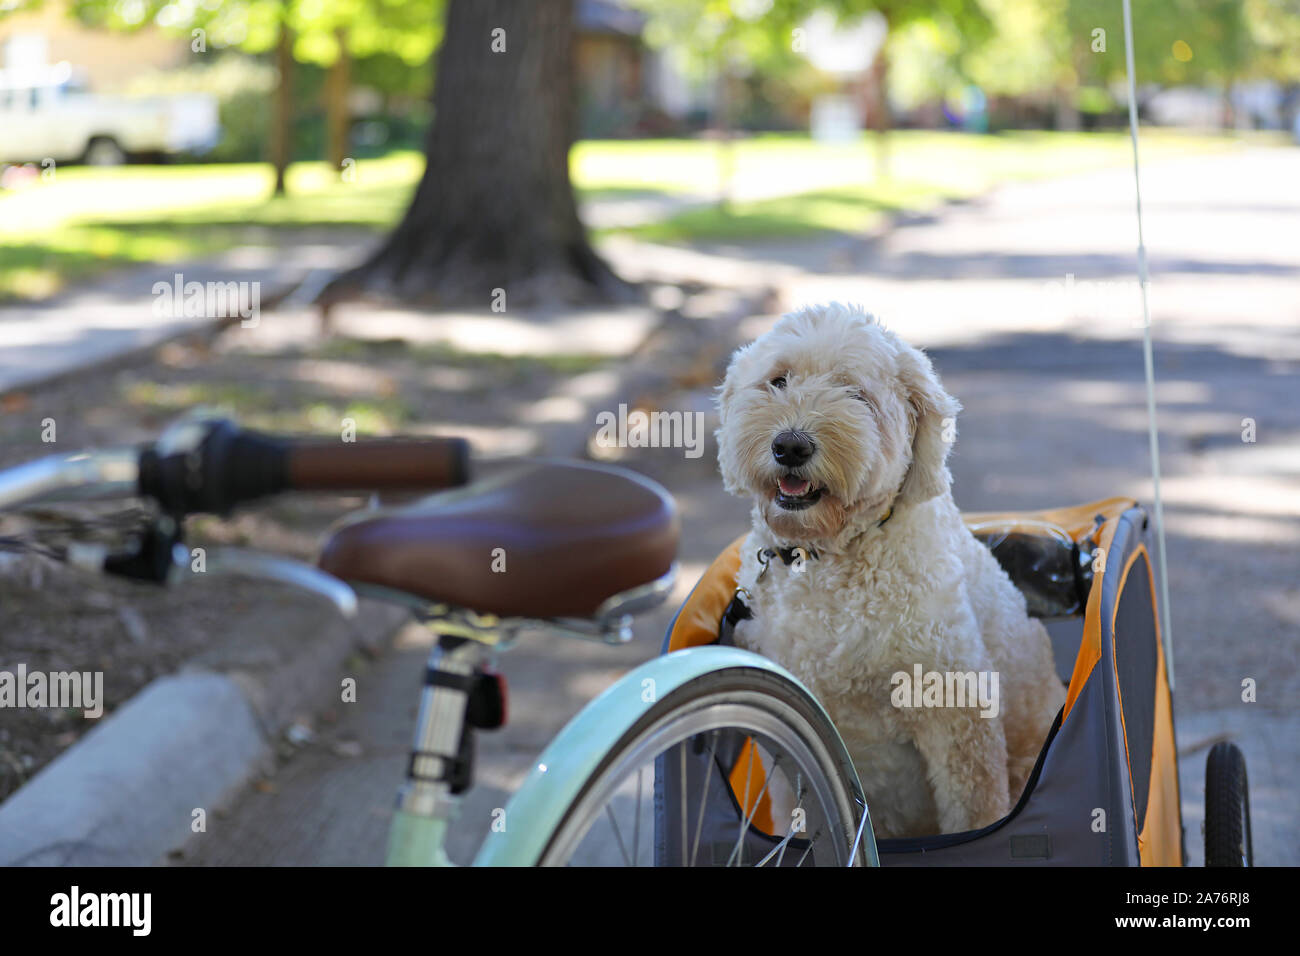 Remolque Bicicleta Para Mascota Infantil Niños Bebes Perros